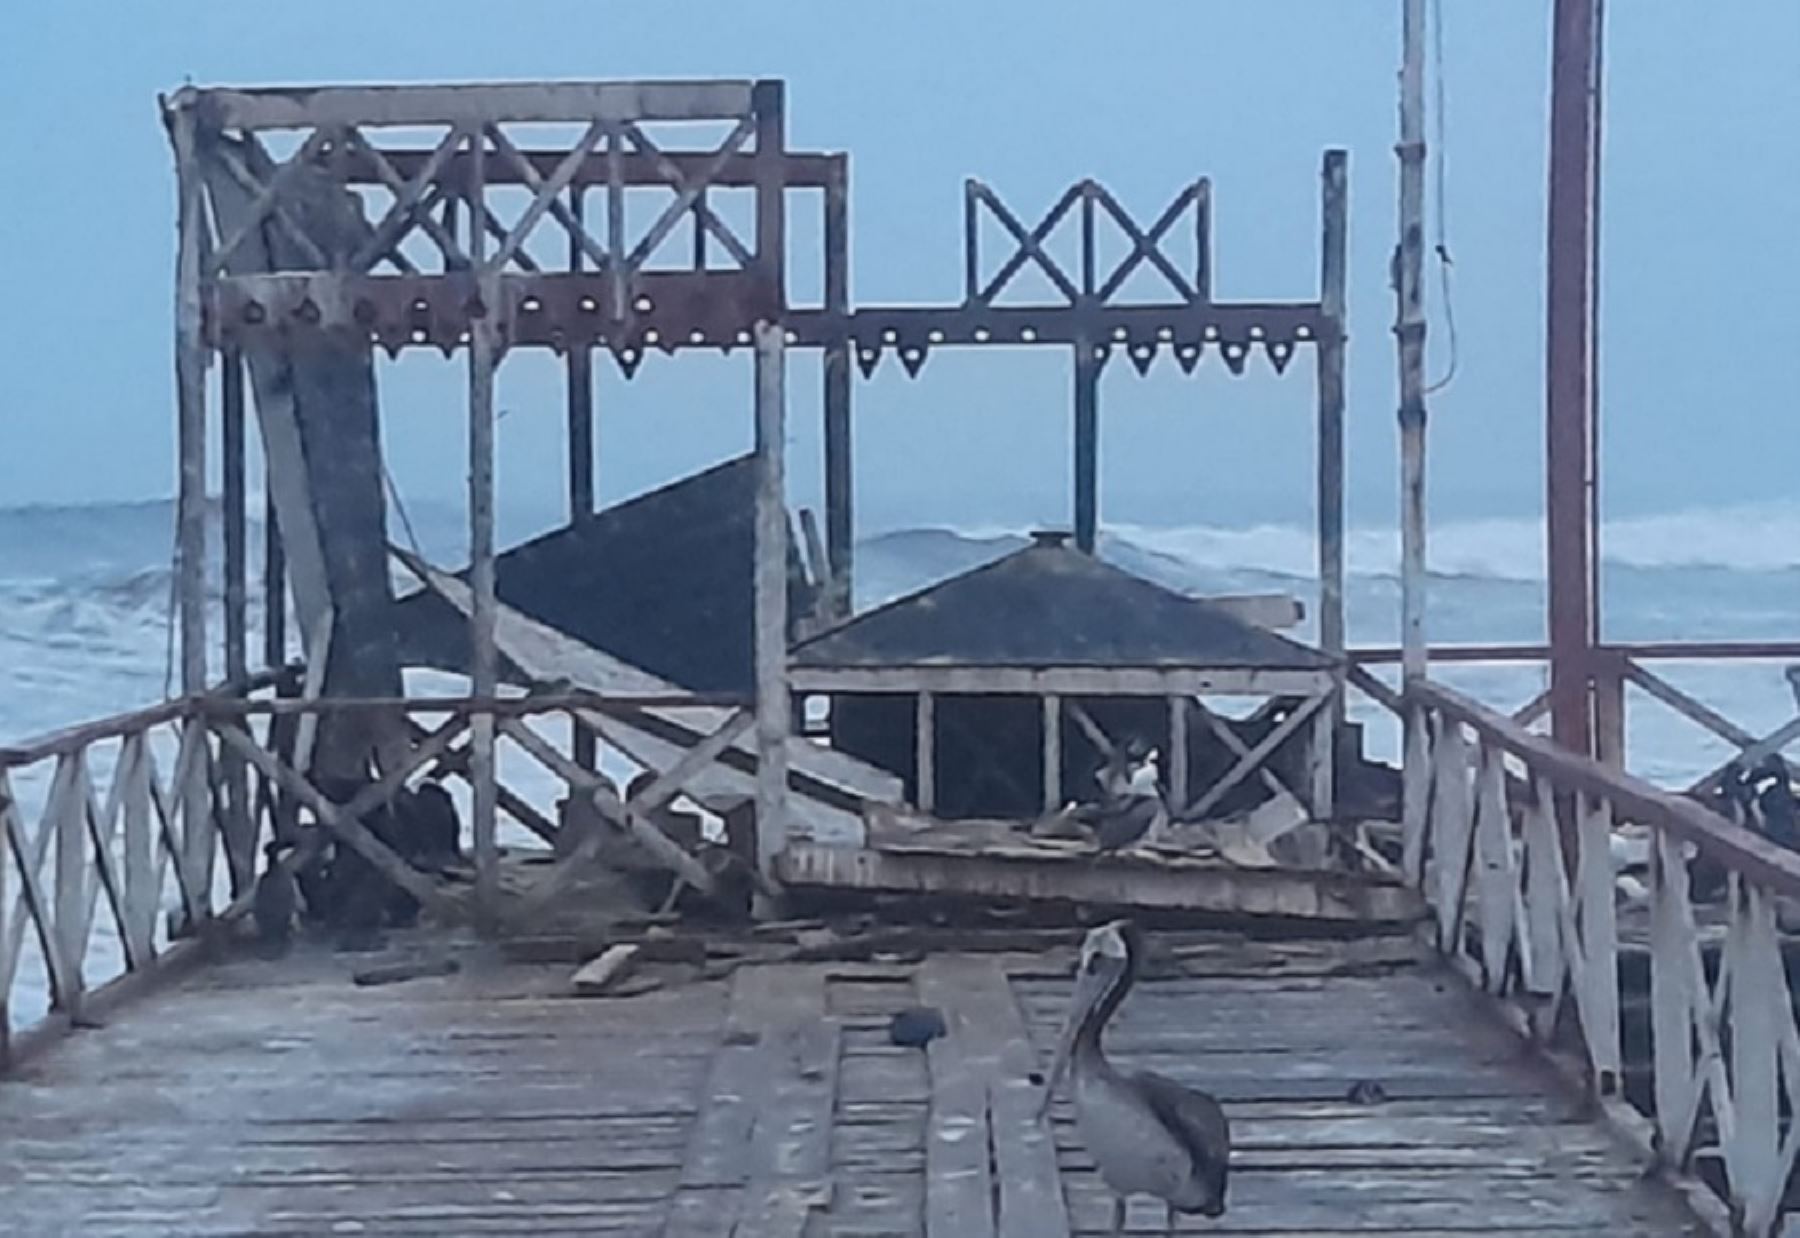 Parte del muelle artesanal turístico de la bahía de Huanchaco, ubicada en la provincia de Trujillo, región La Libertad, se desplomó esta madrugada como consecuencia de los fuertes oleajes que se registran por estos días en todo el litoral de la costa del país.